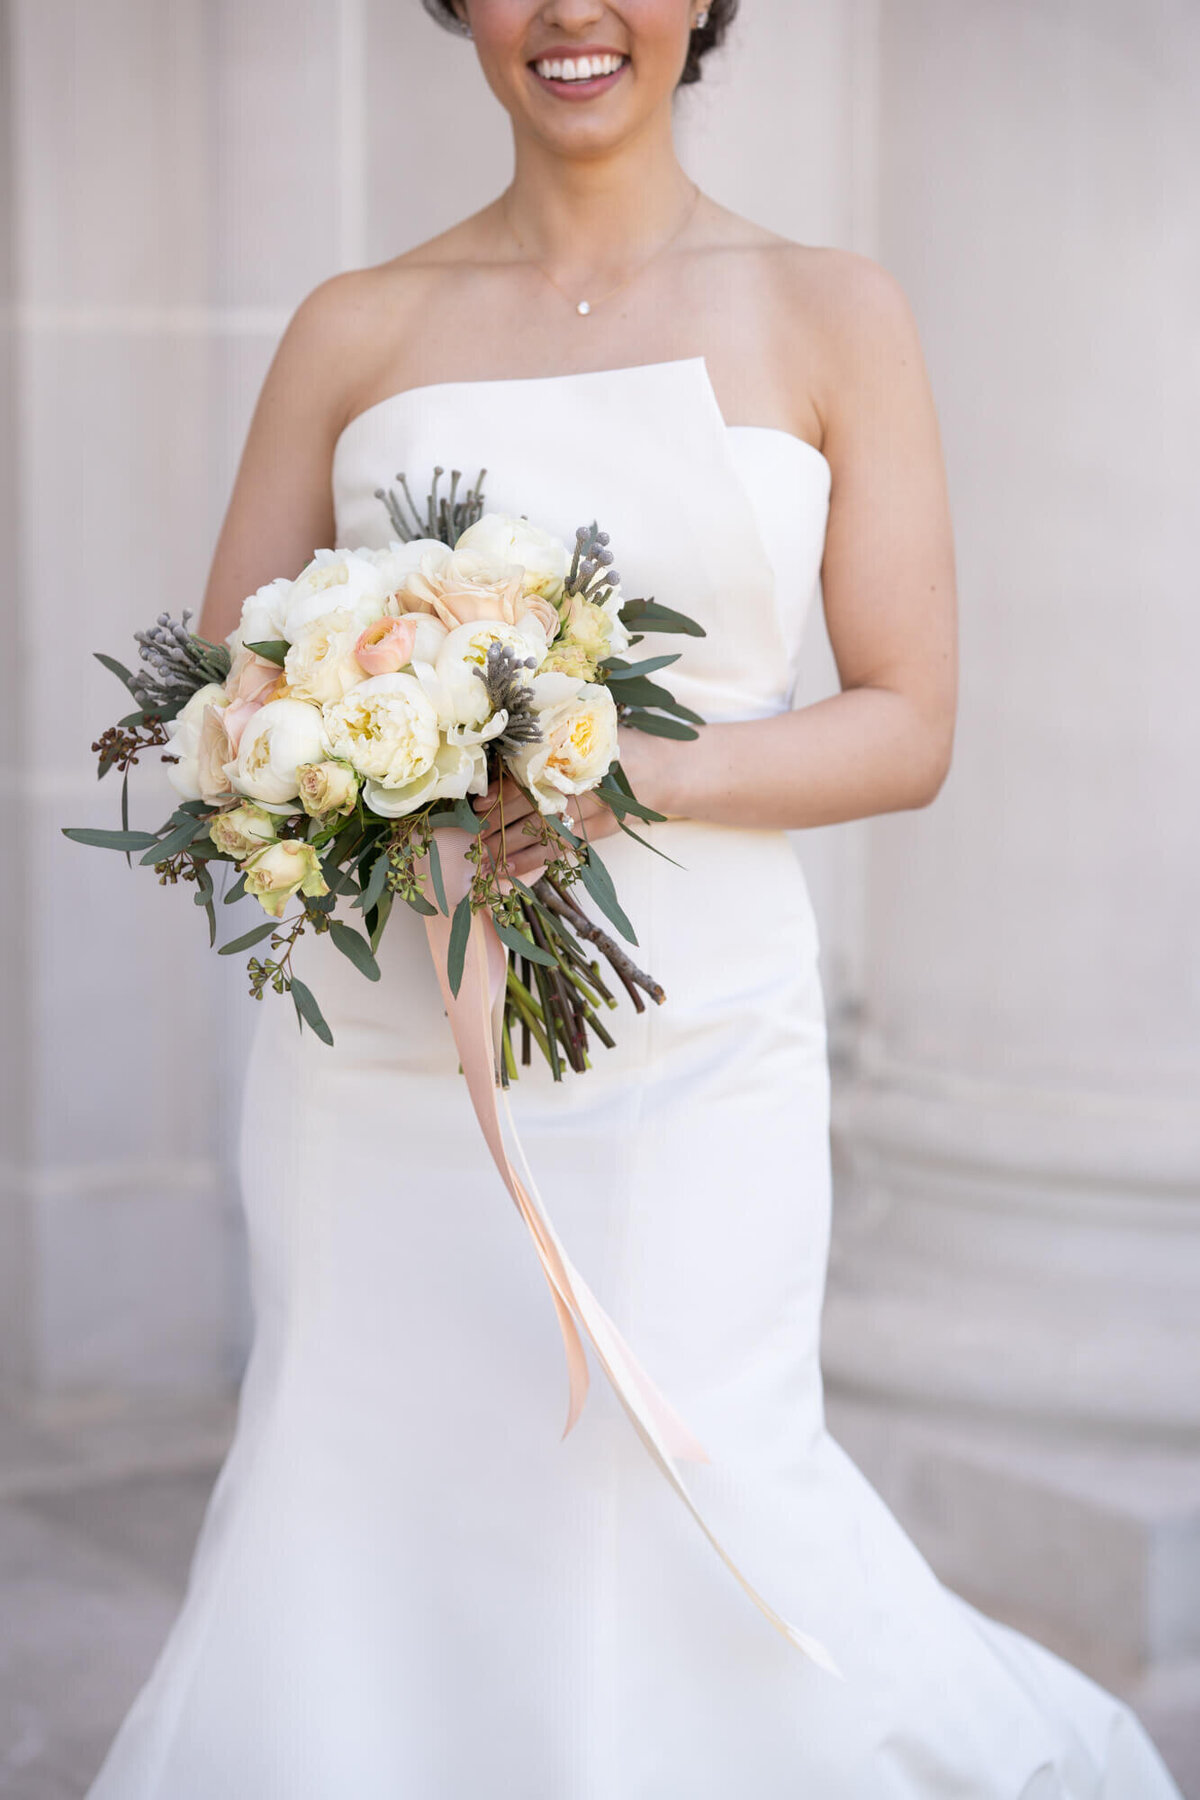 bride-chicago-latina-strapless-wedding-dress-chic-bouquet